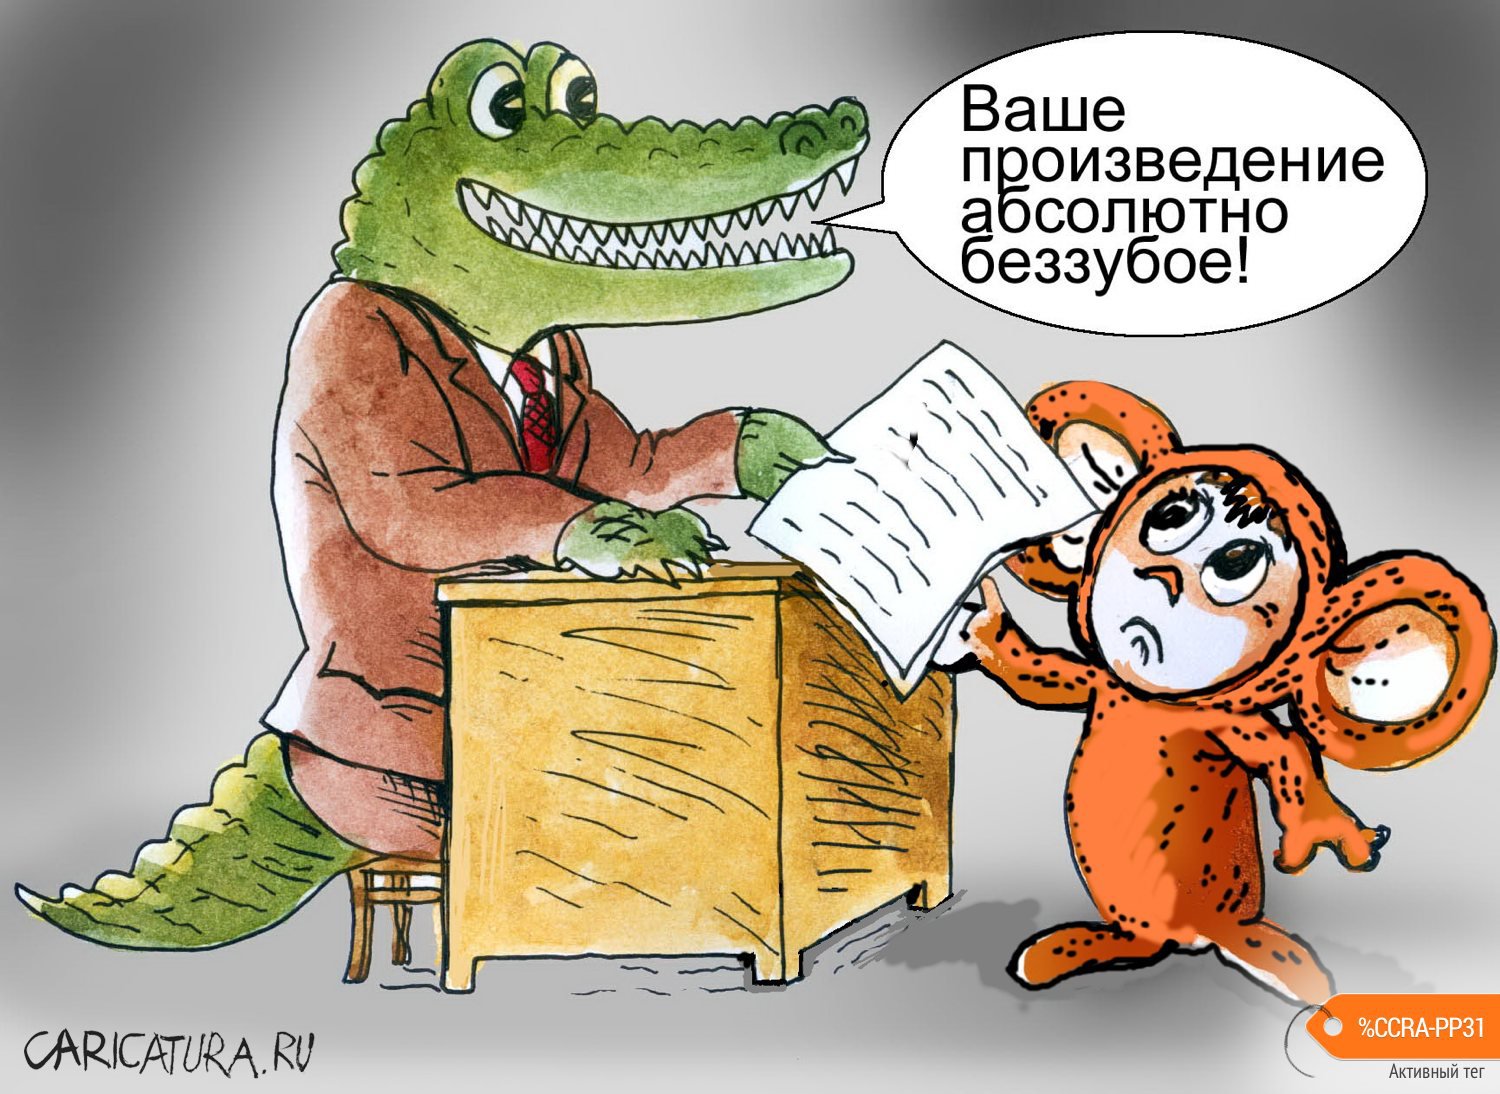 Карикатура "Беззубое произведение", Георгий Майоренко